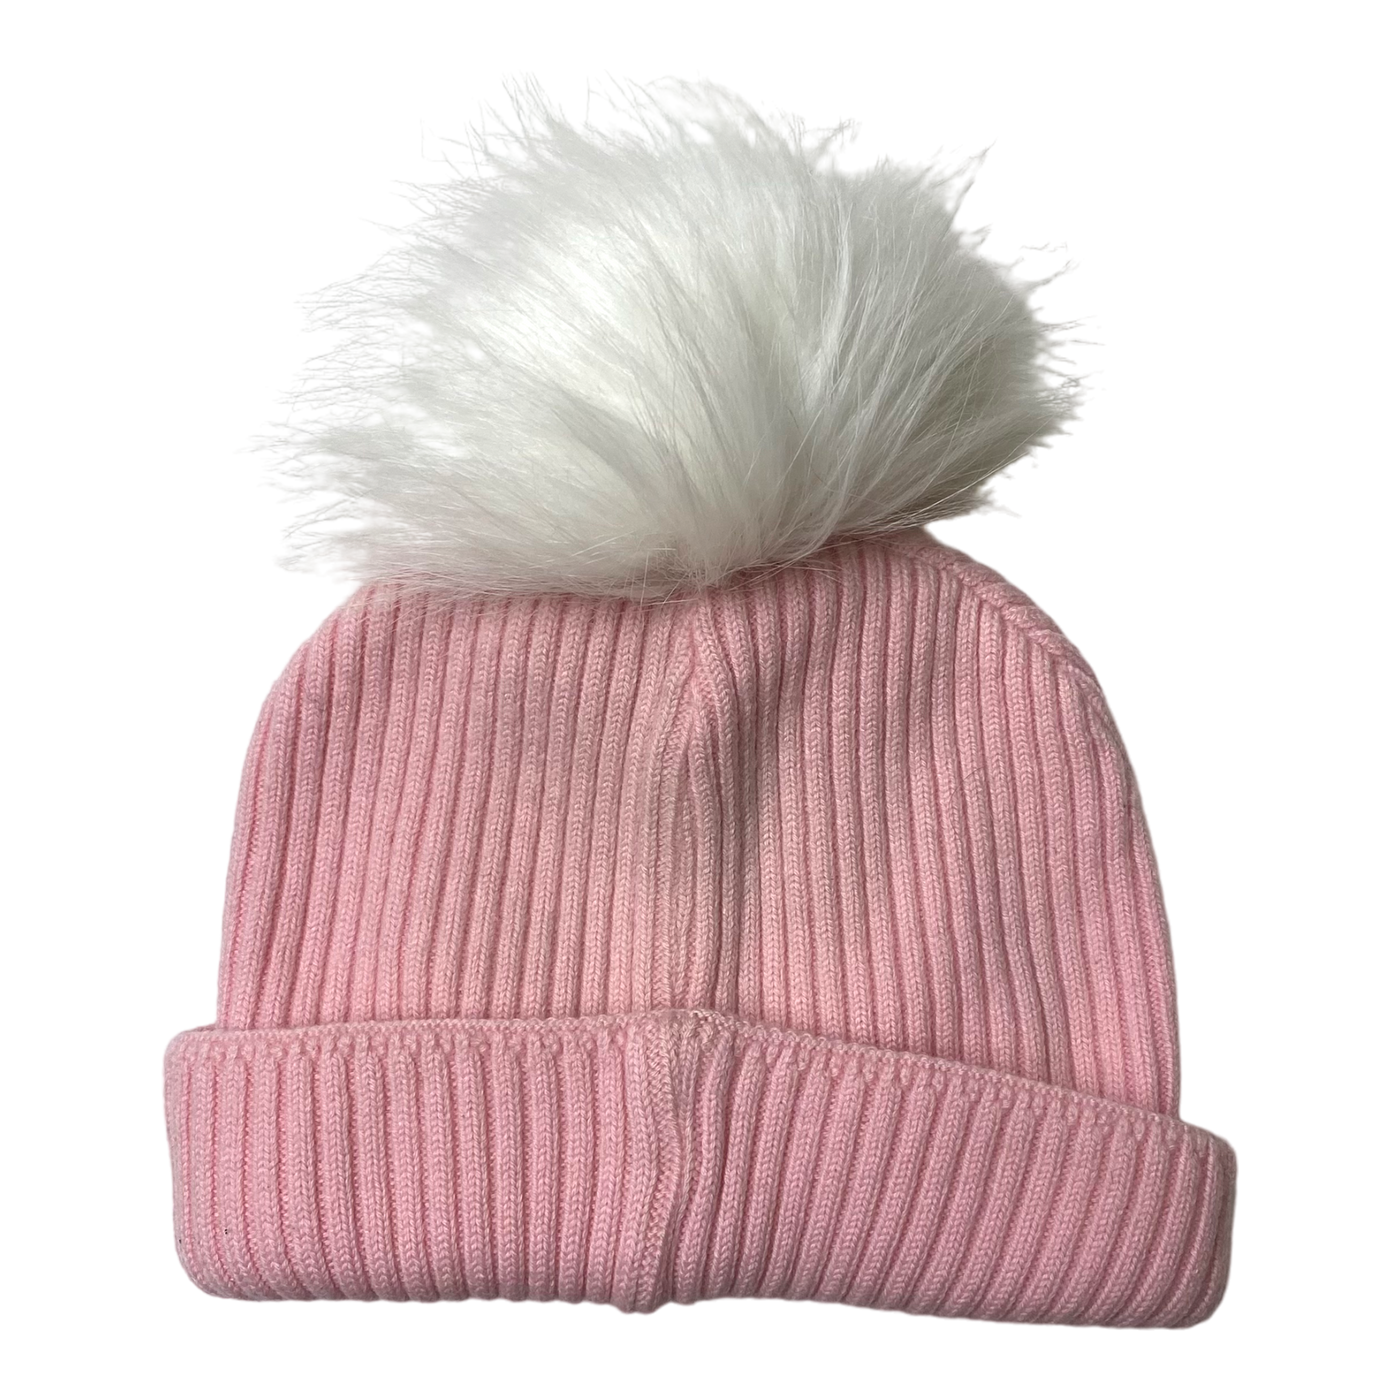 Metsola merino wool beanie, pink | 3-5y